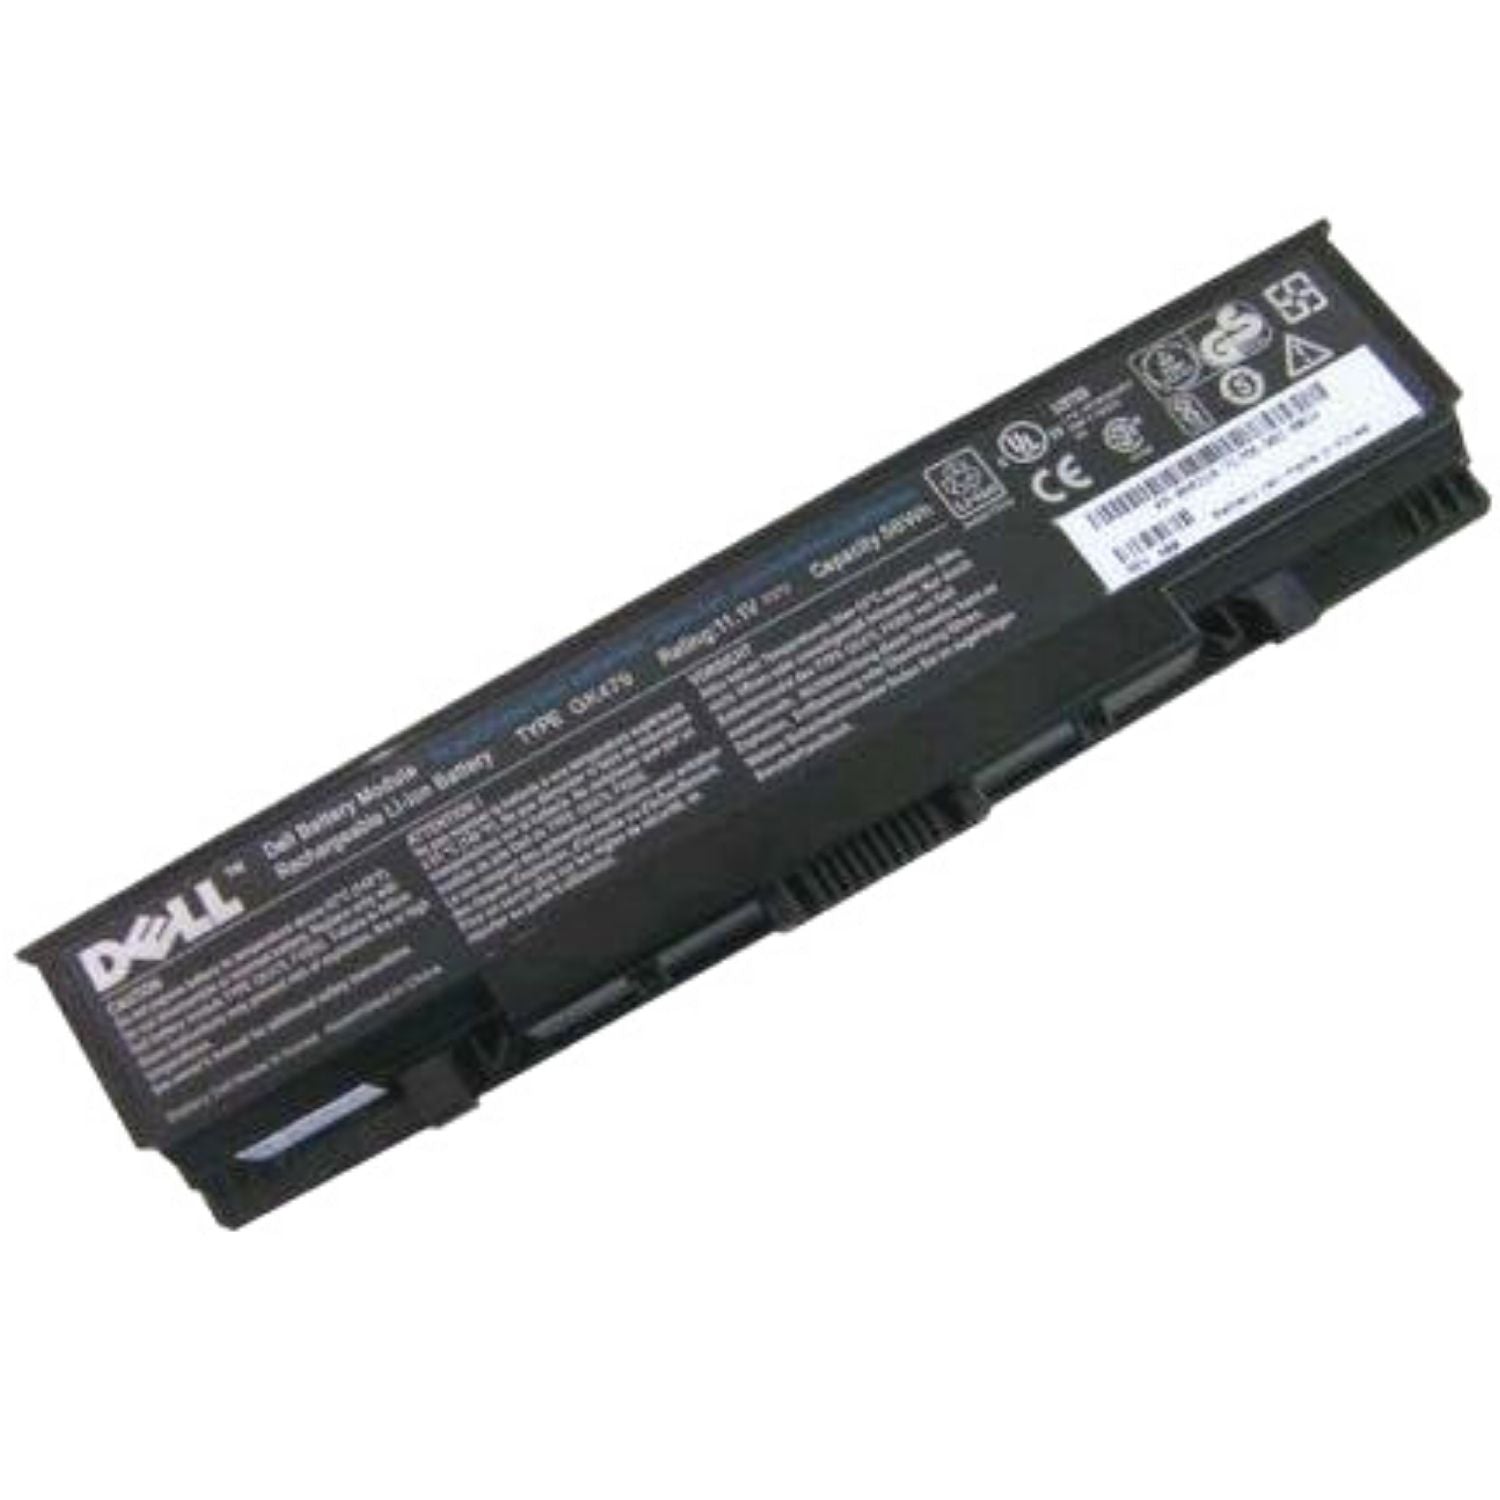 Dell 1520 Battery for 1521 1721 pp22l pp22x Vostro 1500 1700, fits P/N FK890 FP282 GK476 GK479 Laptop Serie's